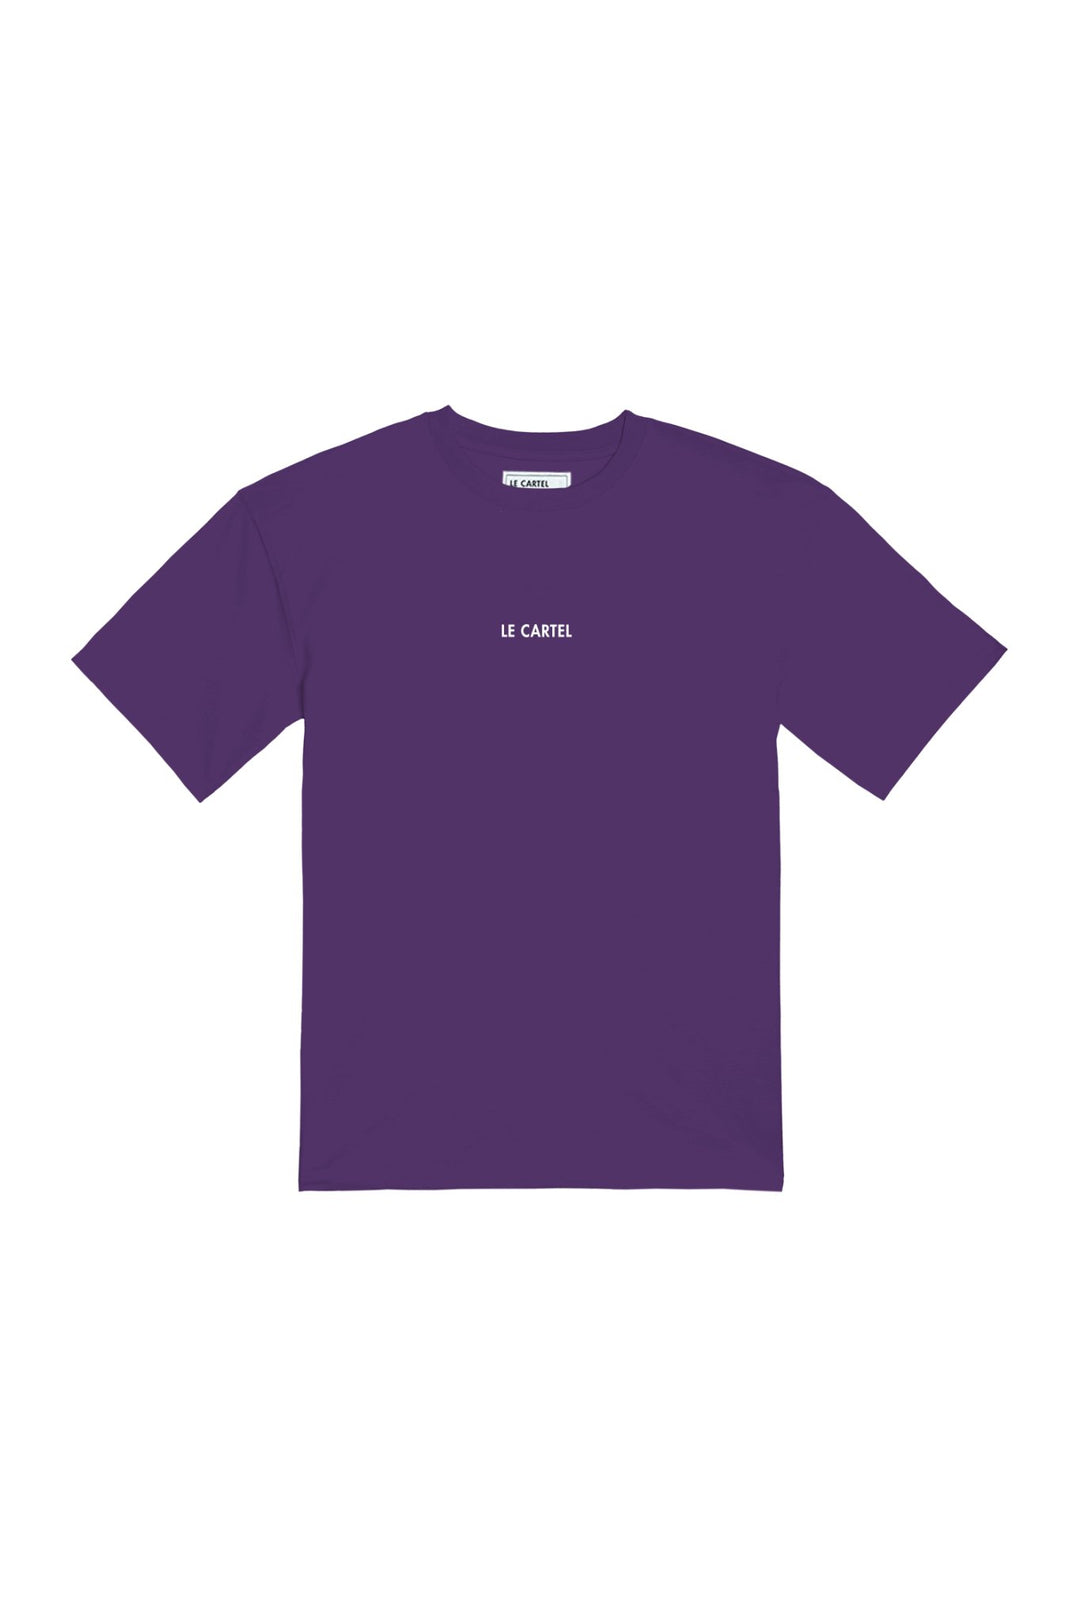 SERIOUS CONSUMER・T - shirt unisexe・Violet - Le Cartel